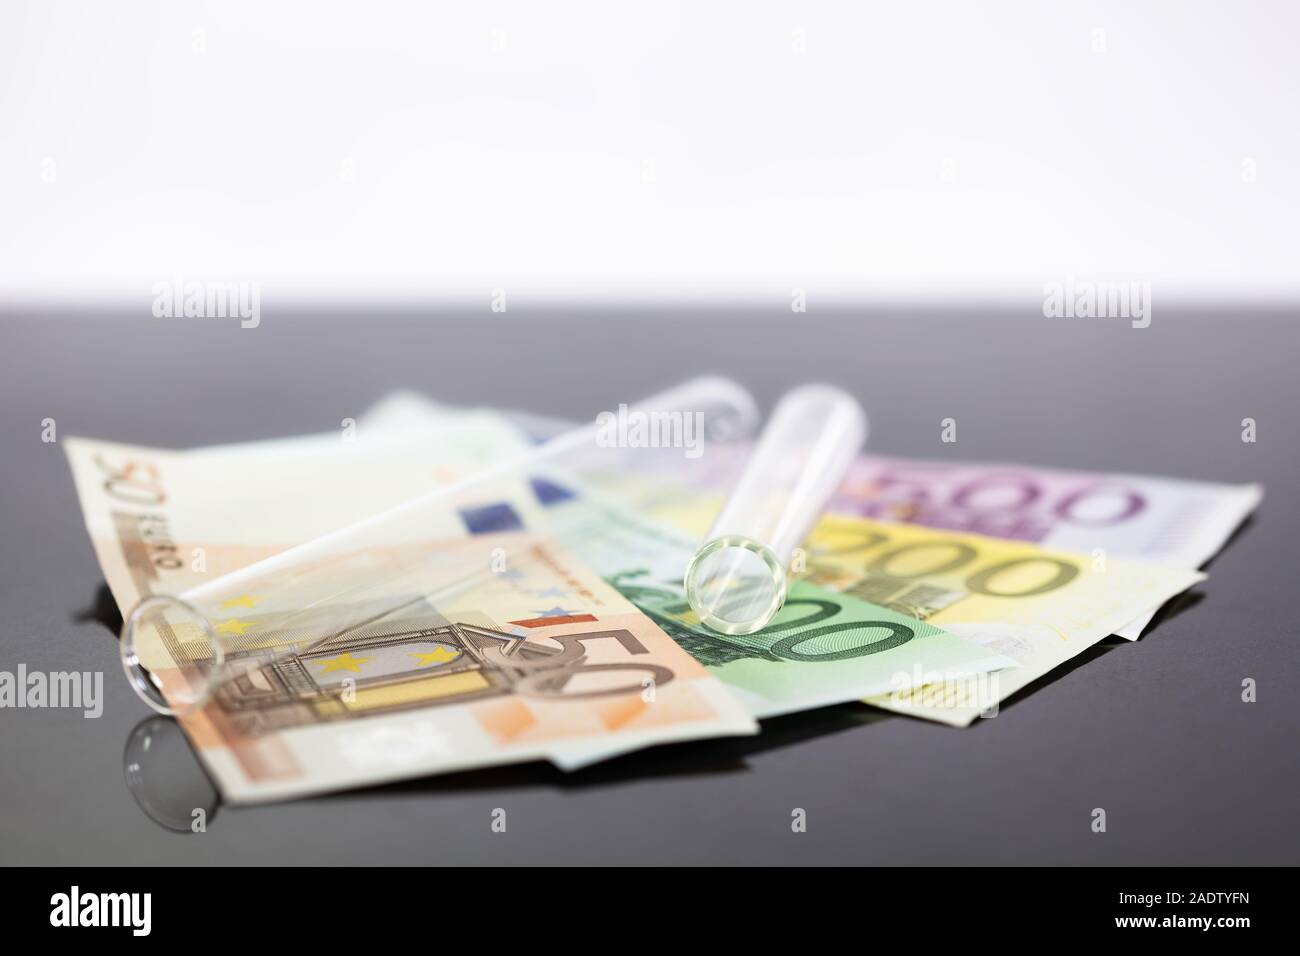 Image Concept tube à essai panoramique avec des billets en euros, des concepts tels que les frais de scolarité ou de recherche, la médecine ou l'industrie pharmaceutique coûteux Banque D'Images